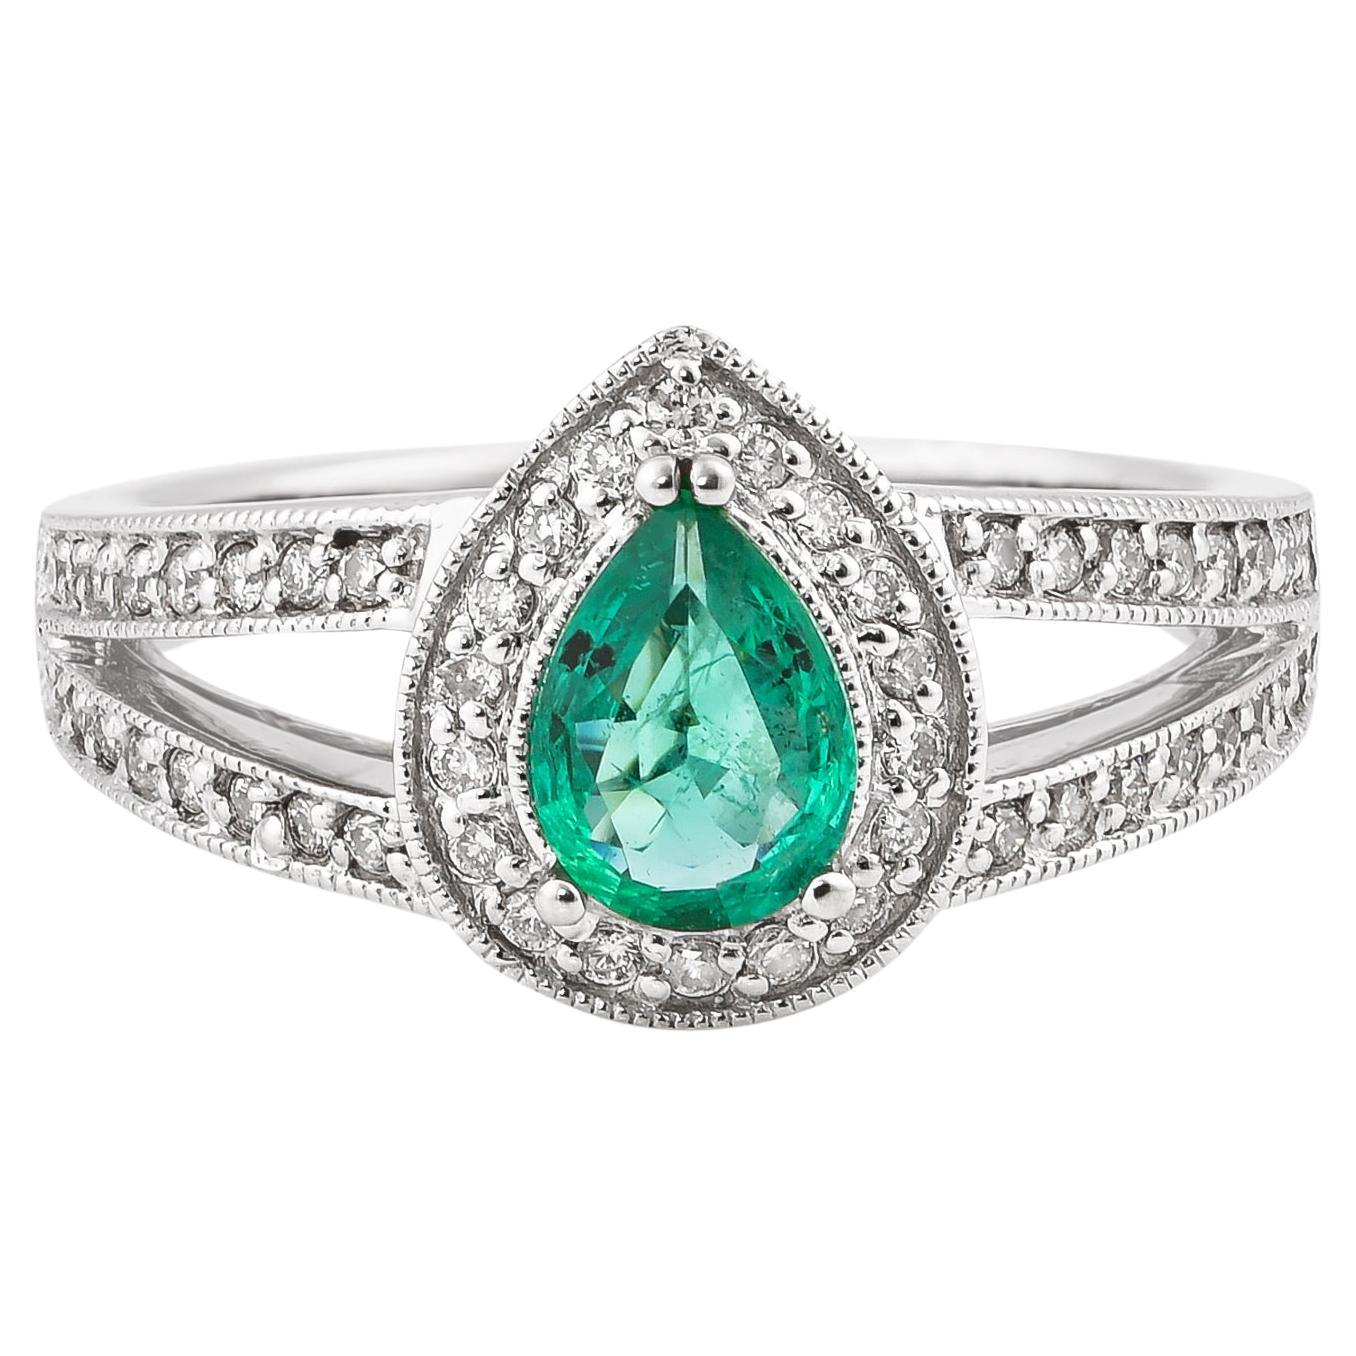 0.5 Carat Emerald and White Diamond Ring in 14 Karat White Gold